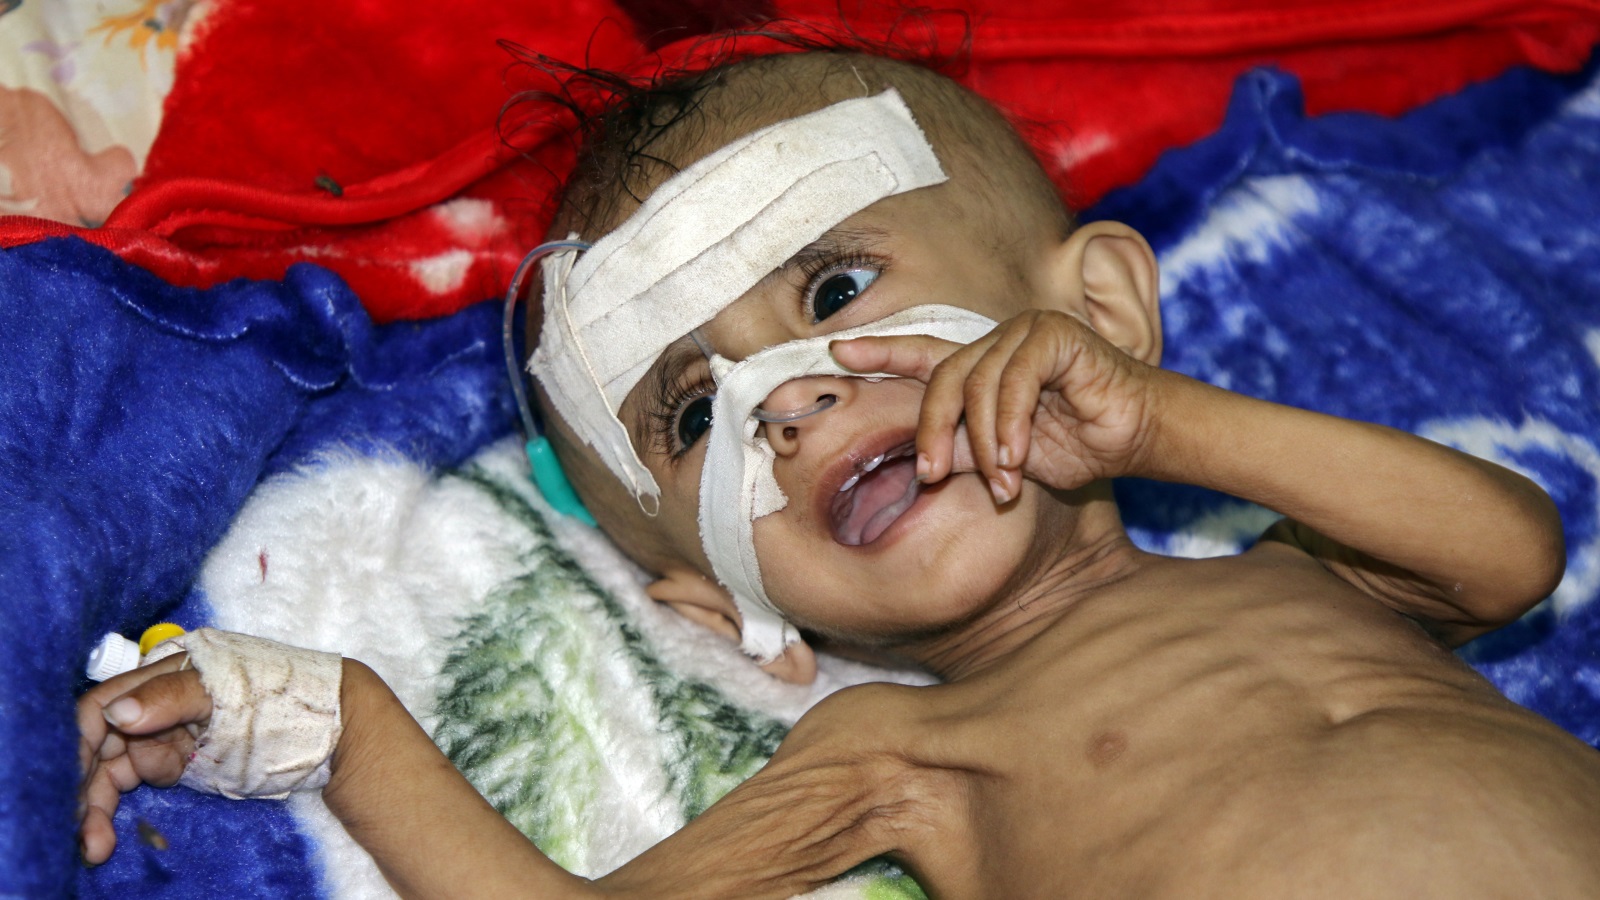 ‪طفلة عمرها عام واحد في مستشفى الحوطة بمحافظة لحج جنوبي اليمن حيث تعاني من سوء تغذية حاد (رويترز)‬ طفلة عمرها عام واحد في مستشفى الحوطة بمحافظة لحج جنوبي اليمن حيث تعاني من سوء تغذية حاد (رويترز)